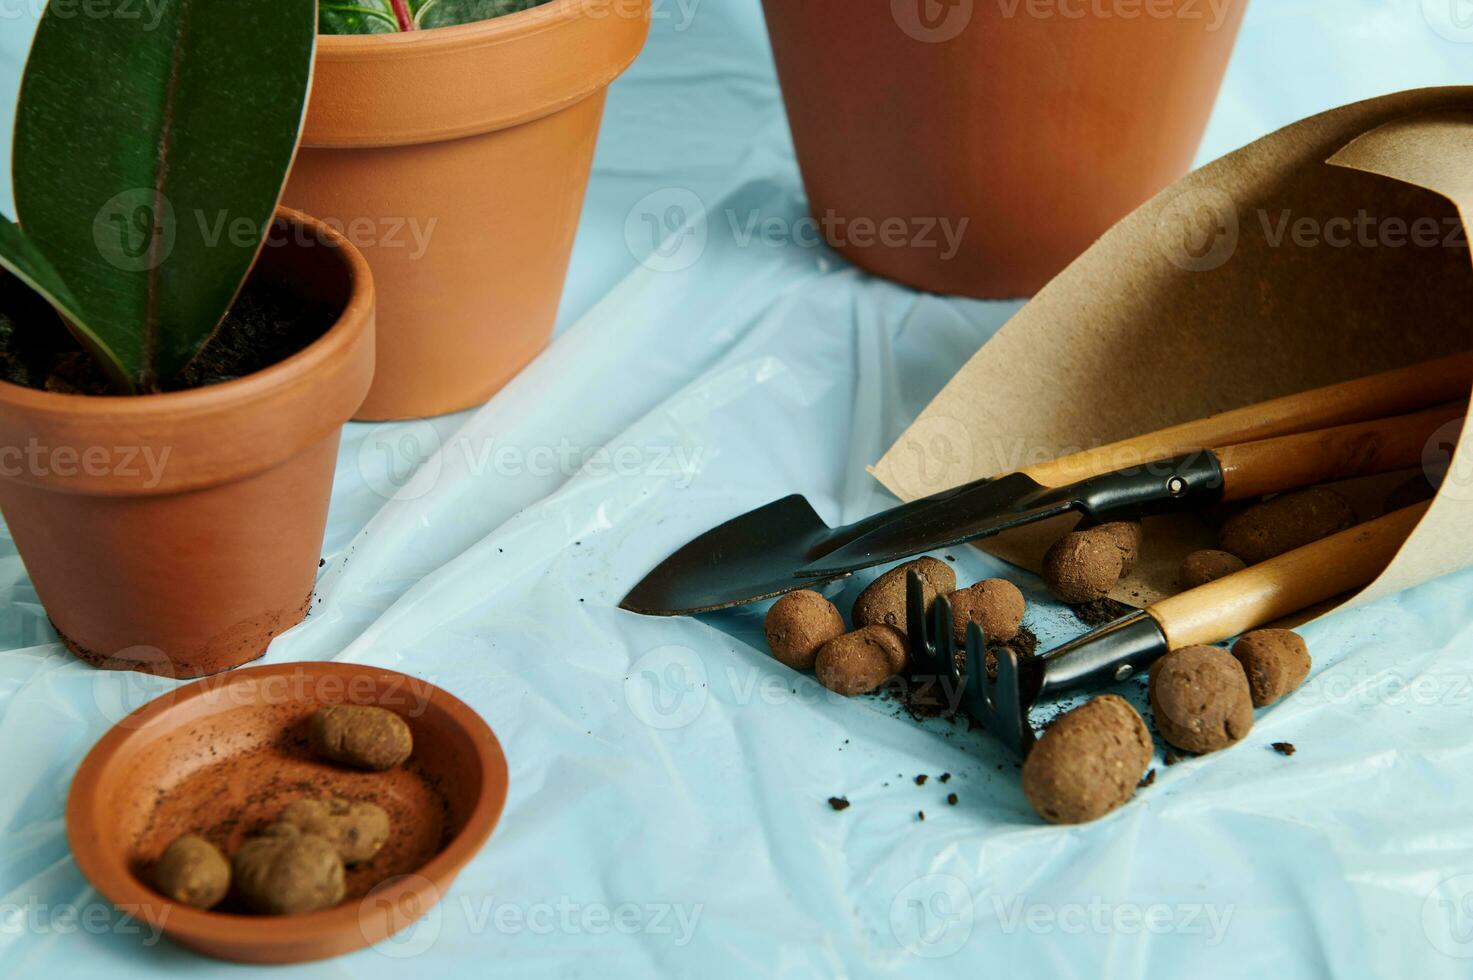 expanderat lera i en lera bricka med en uppsättning av trädgård verktyg insvept i hantverk papper mot de bakgrund av lera kastruller med växter foto